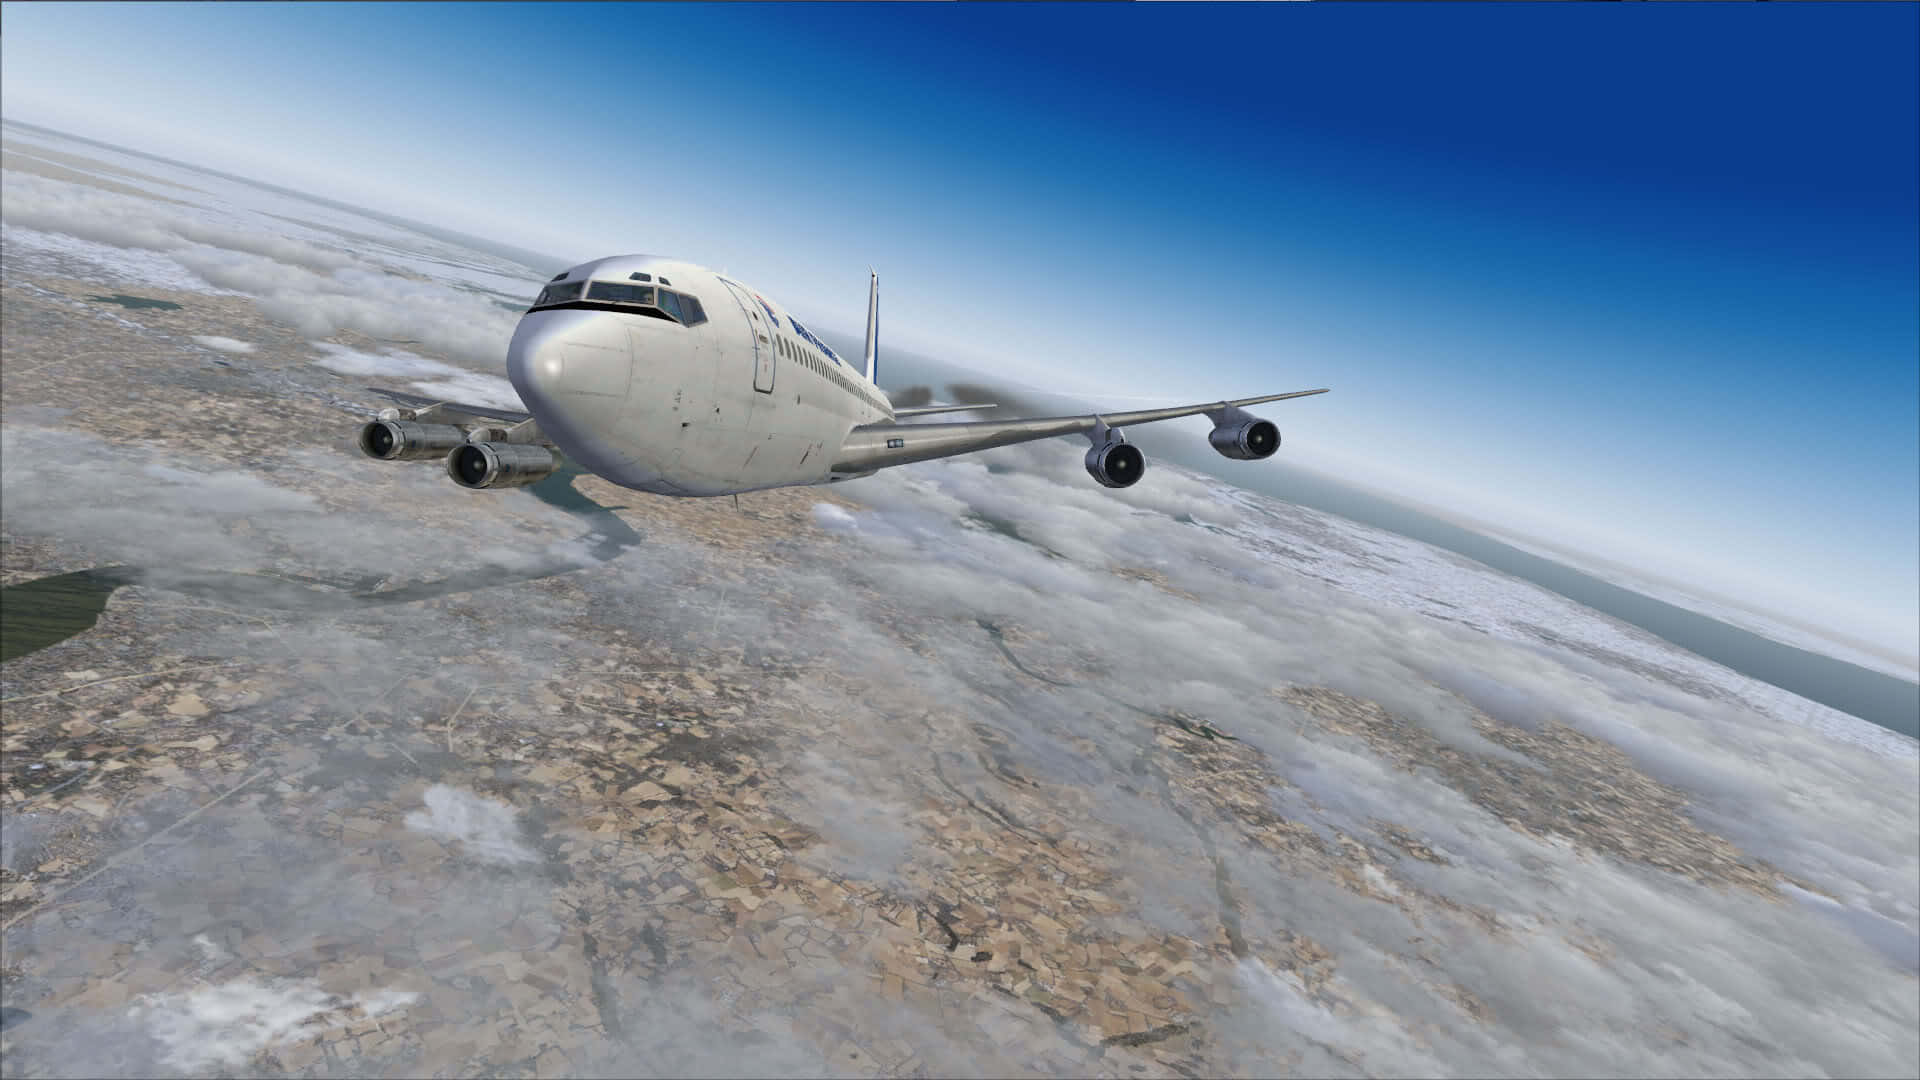 Upplevden Mest Realistiska Flygsimulatorn Med Microsoft Flight Simulator.